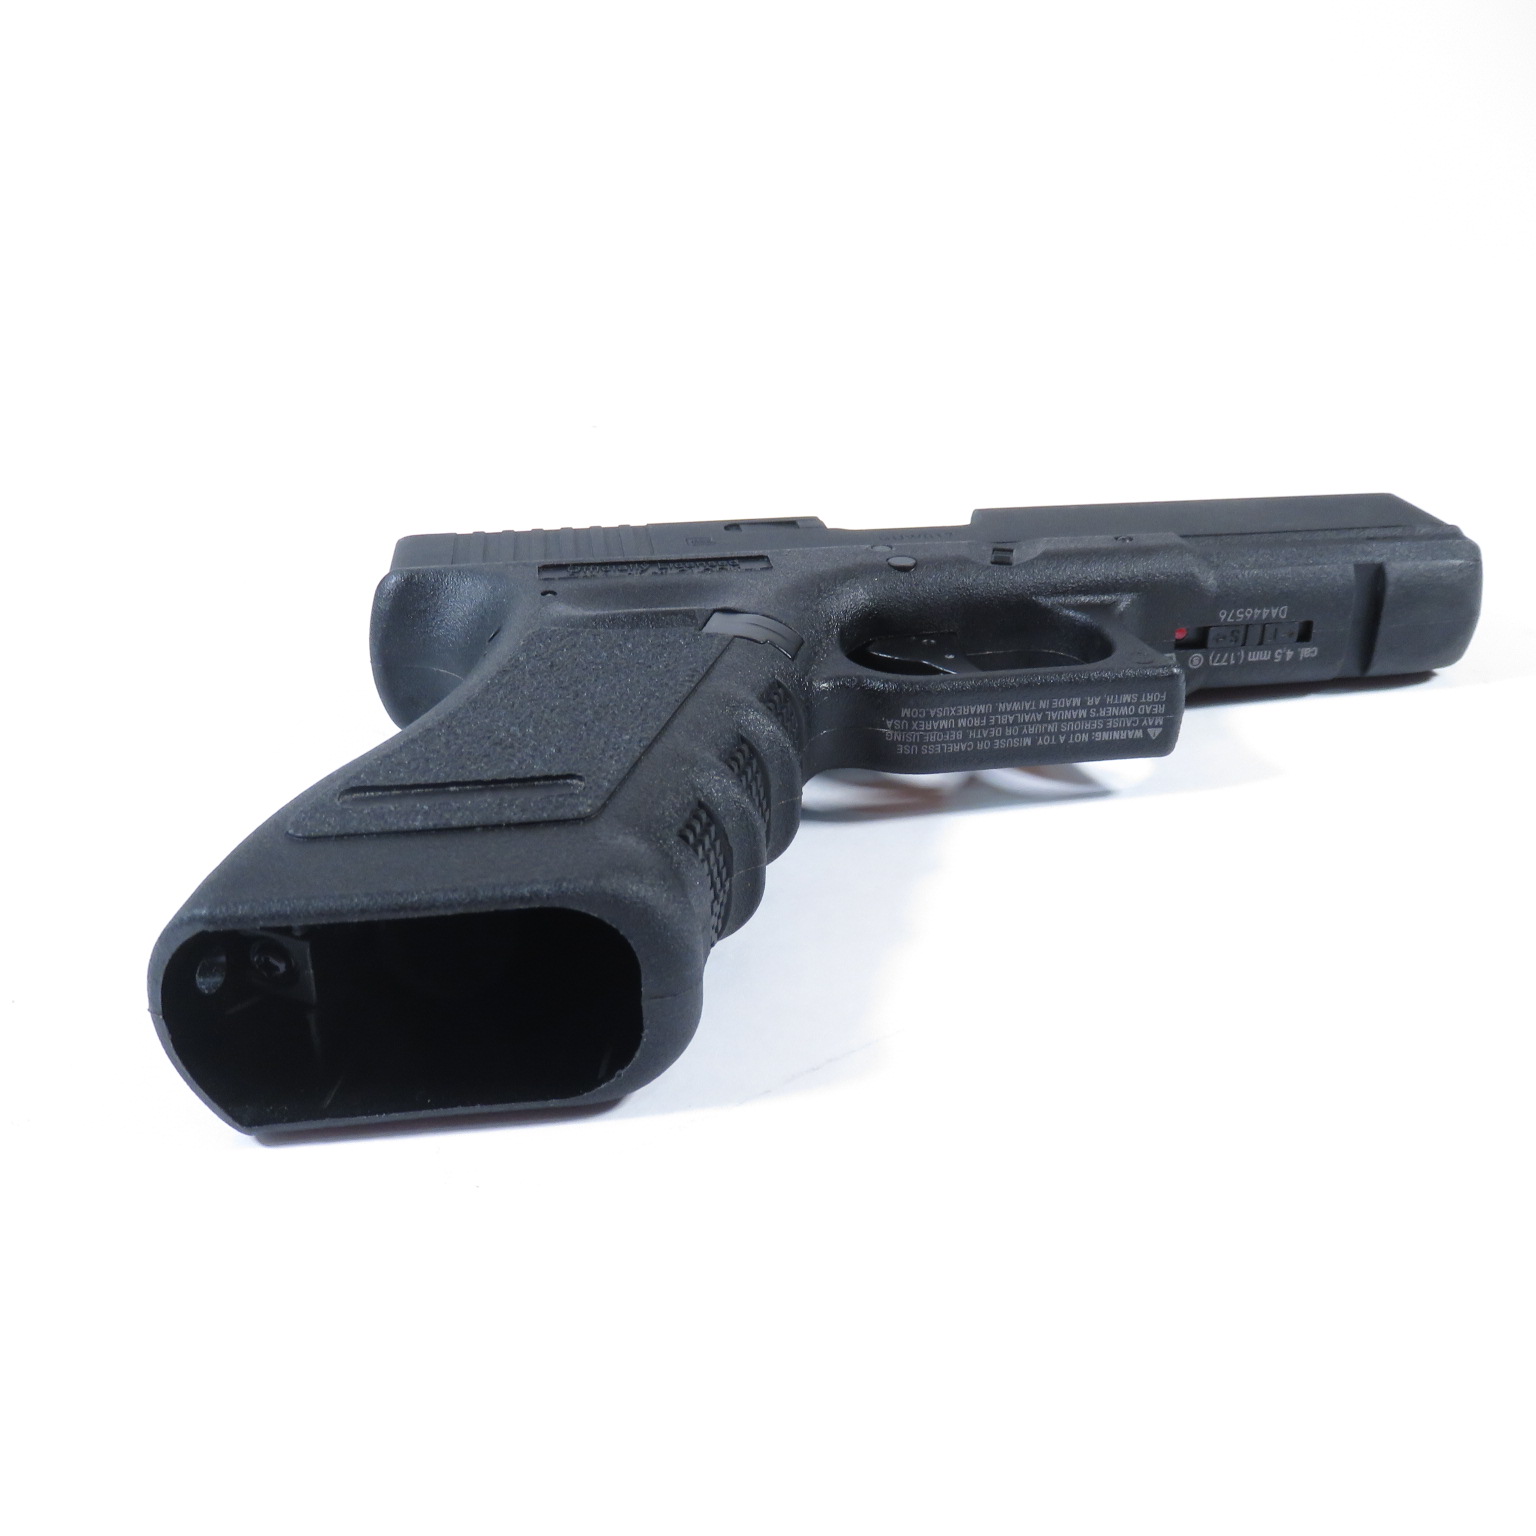  Umarex GLOCK 17 Blowback .177 Caliber BB Gun Air Pistol, Gen3  : Sports & Outdoors